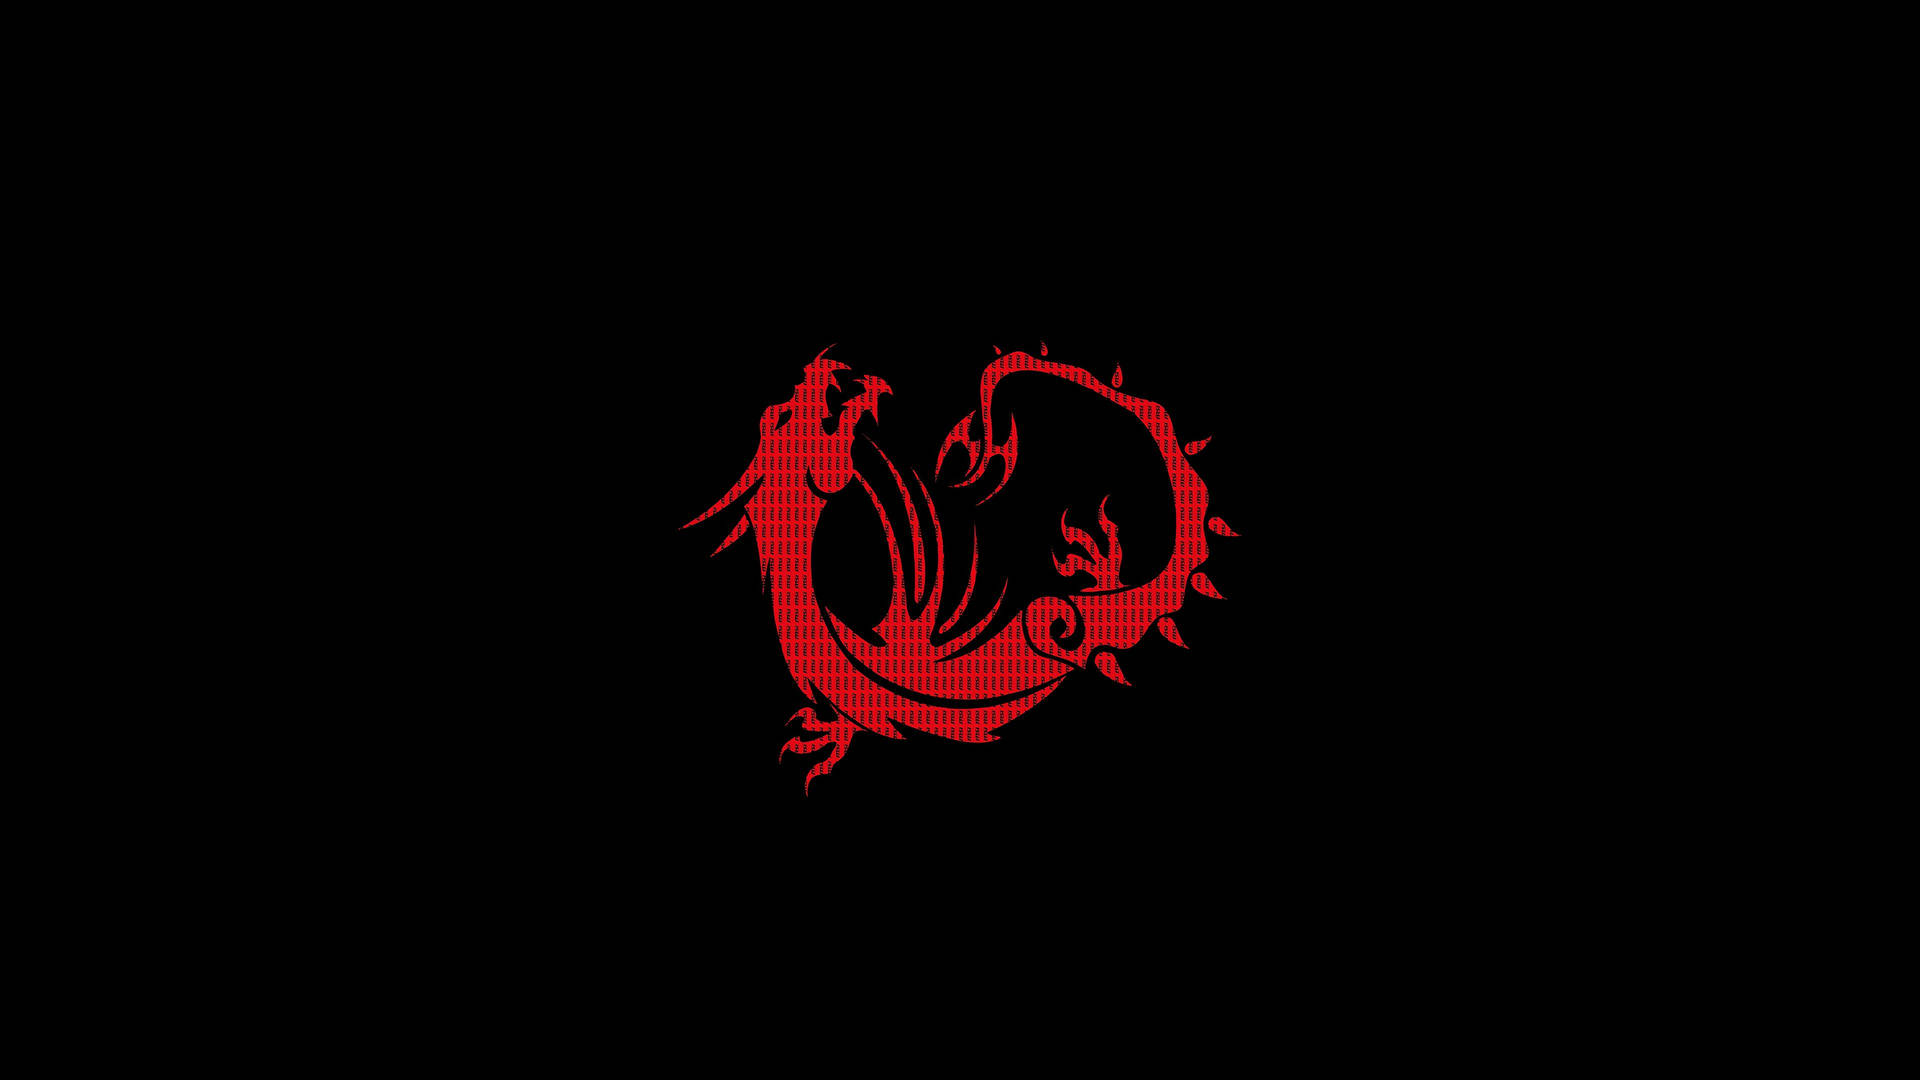 Msi 4k Red Dragon In Black